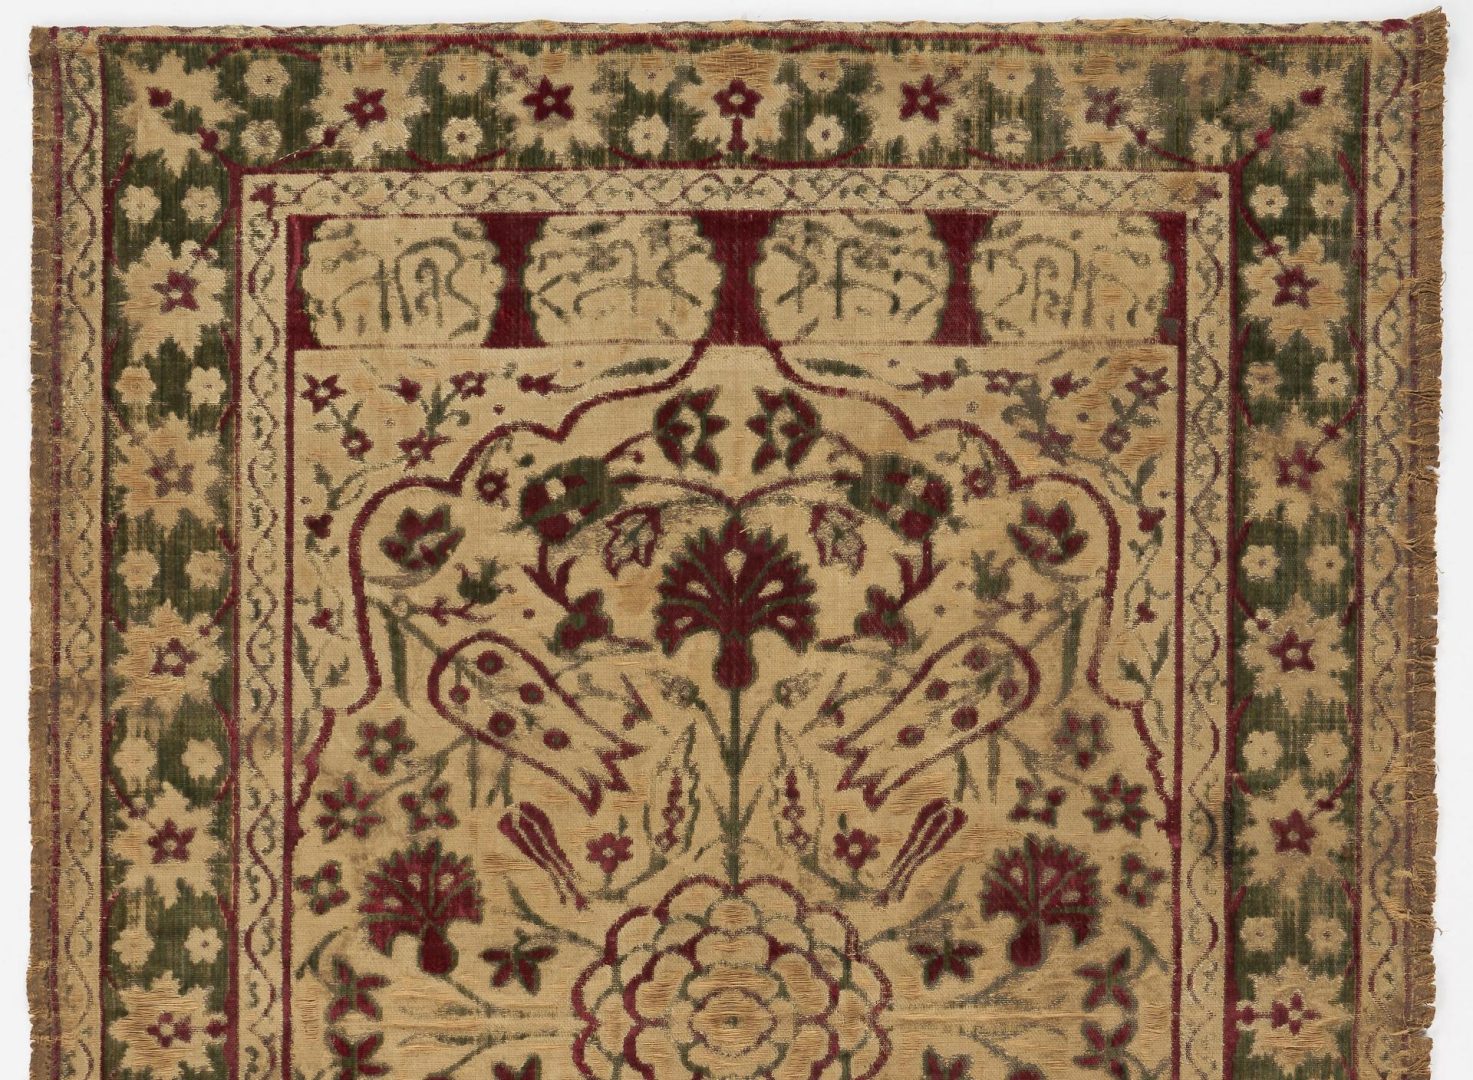 Lot 1026: 2 Persian Woven Velvet Textiles or Tapestries